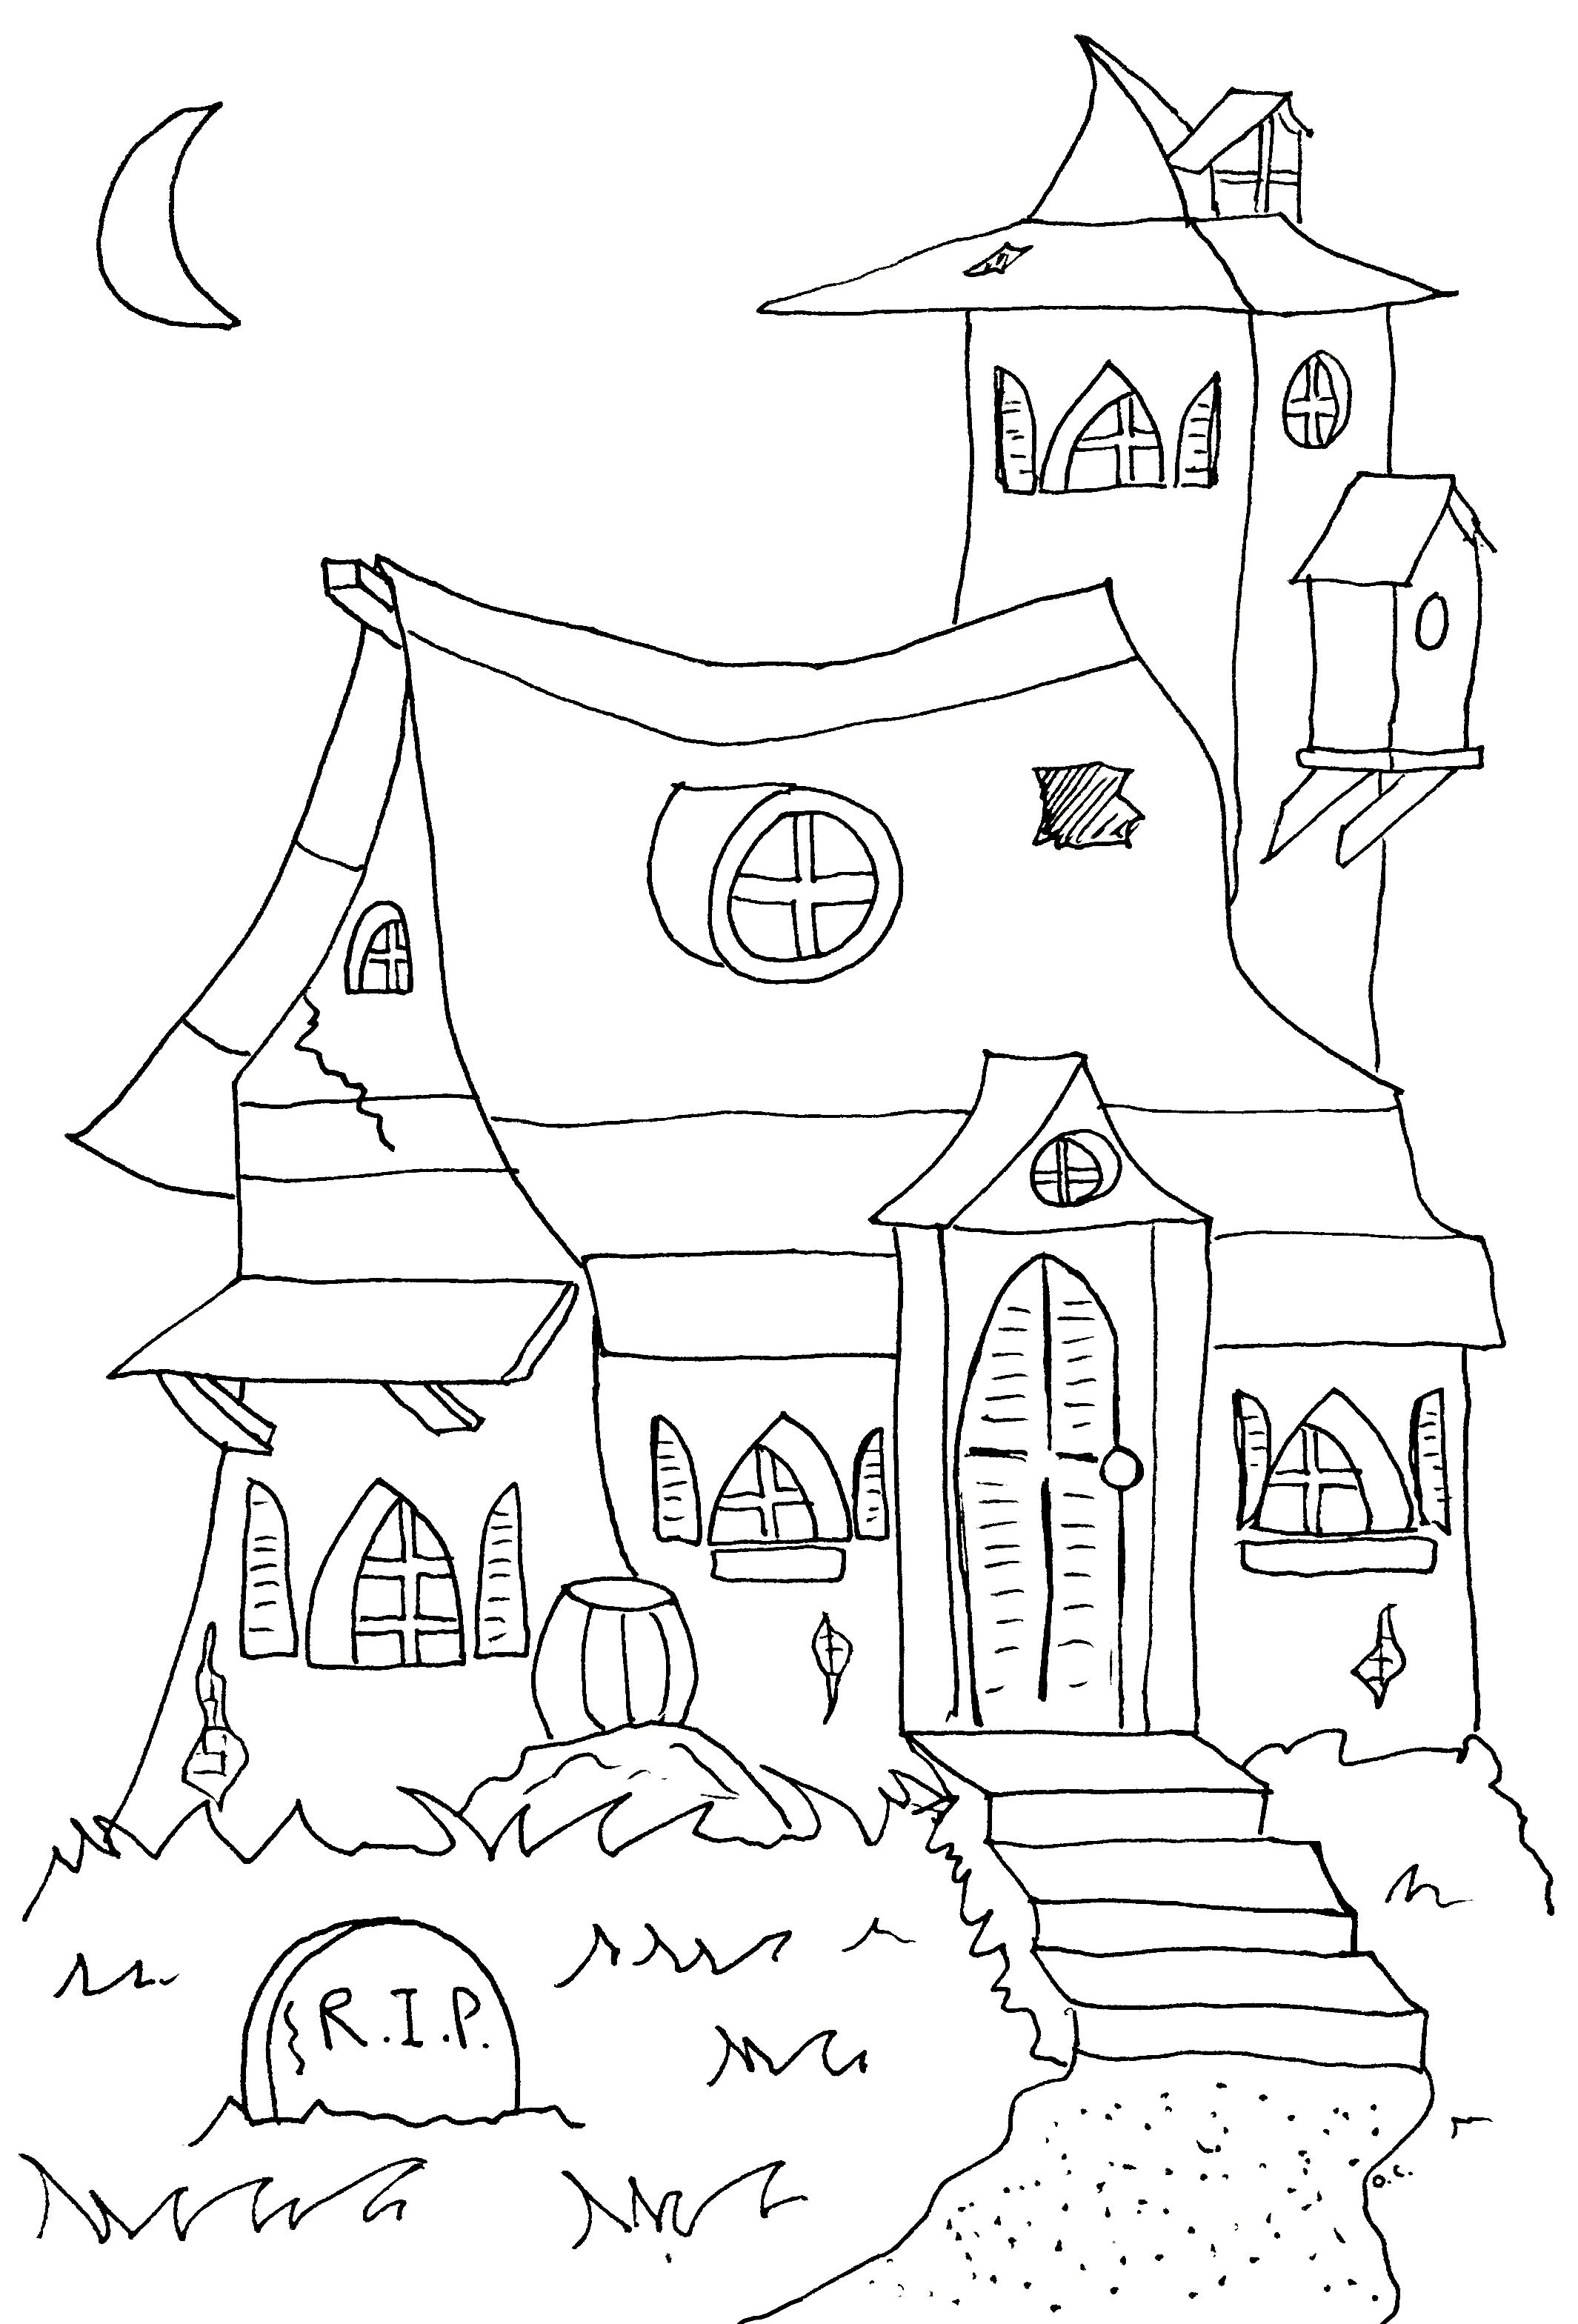 Página para colorir super simples do Dia das Bruxas com uma Casa Assombrada